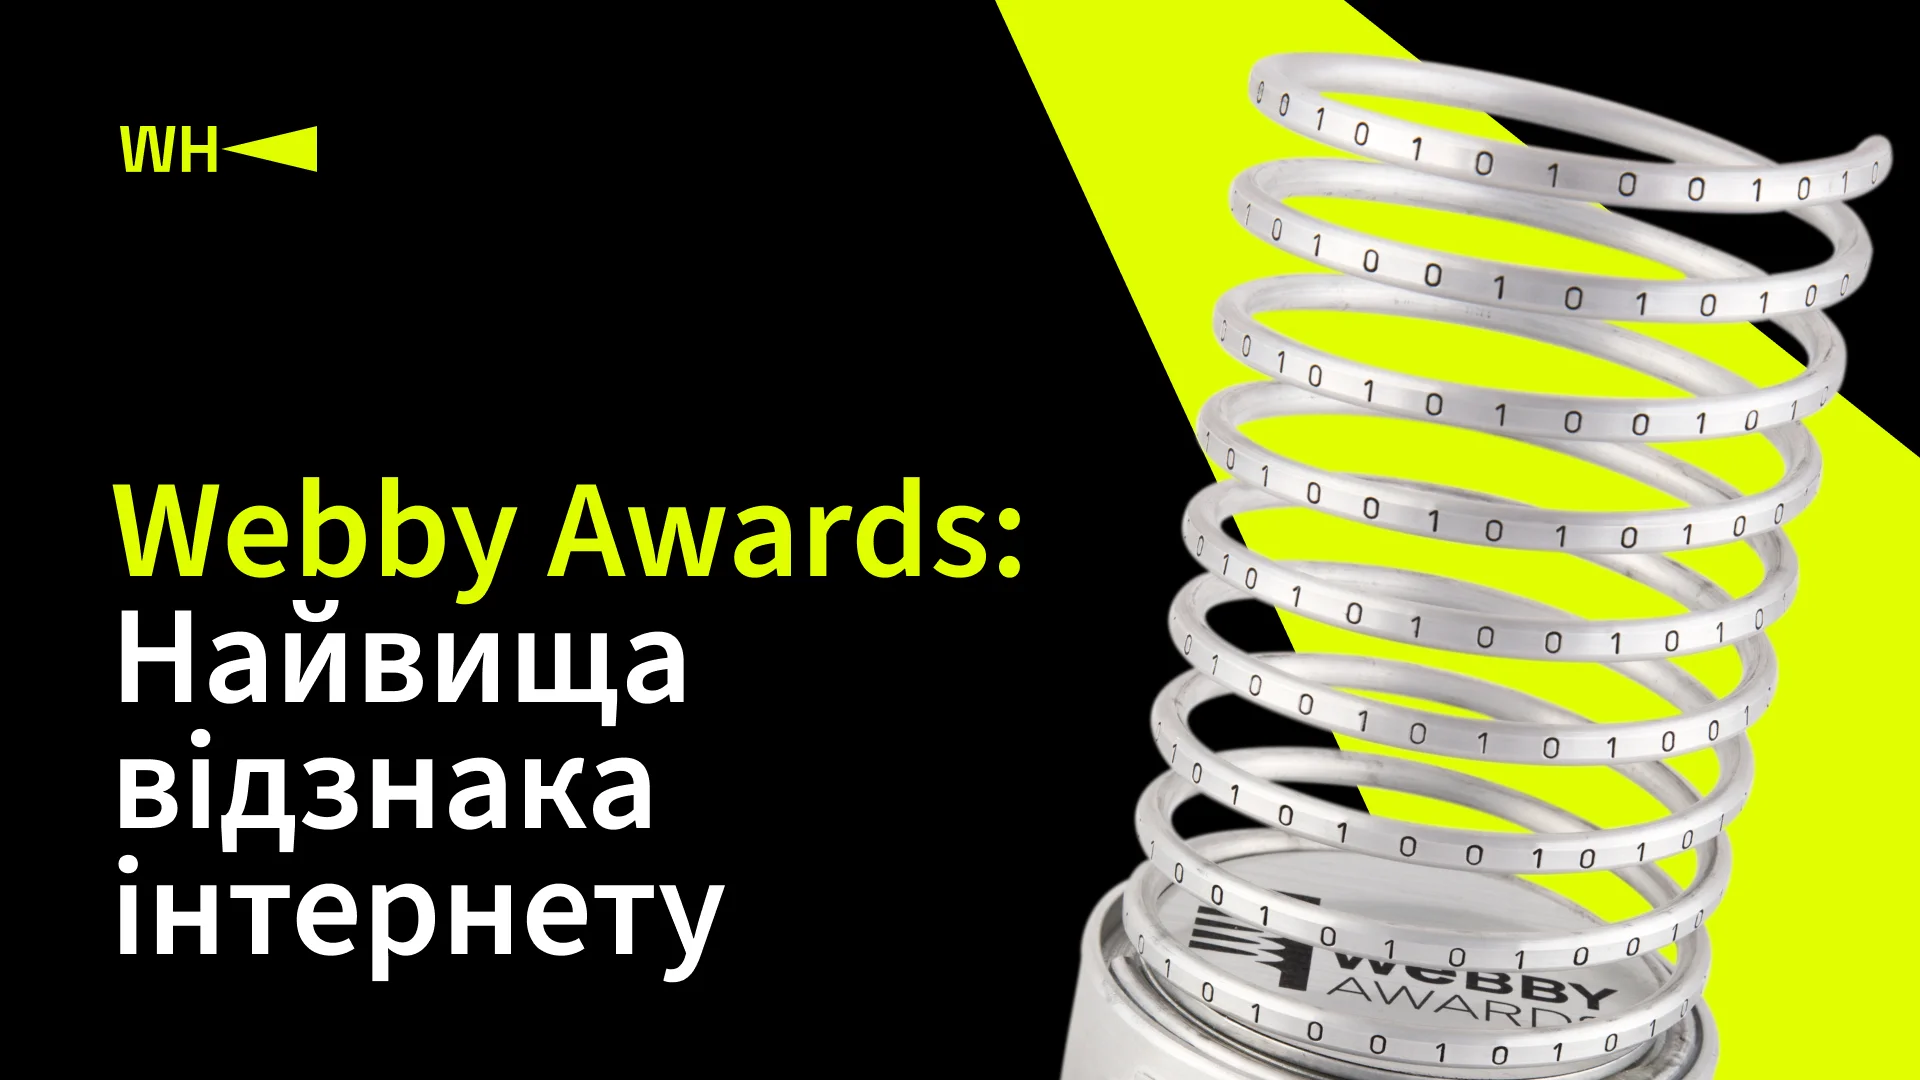 Webby Awards: Найвища відзнака інтернету